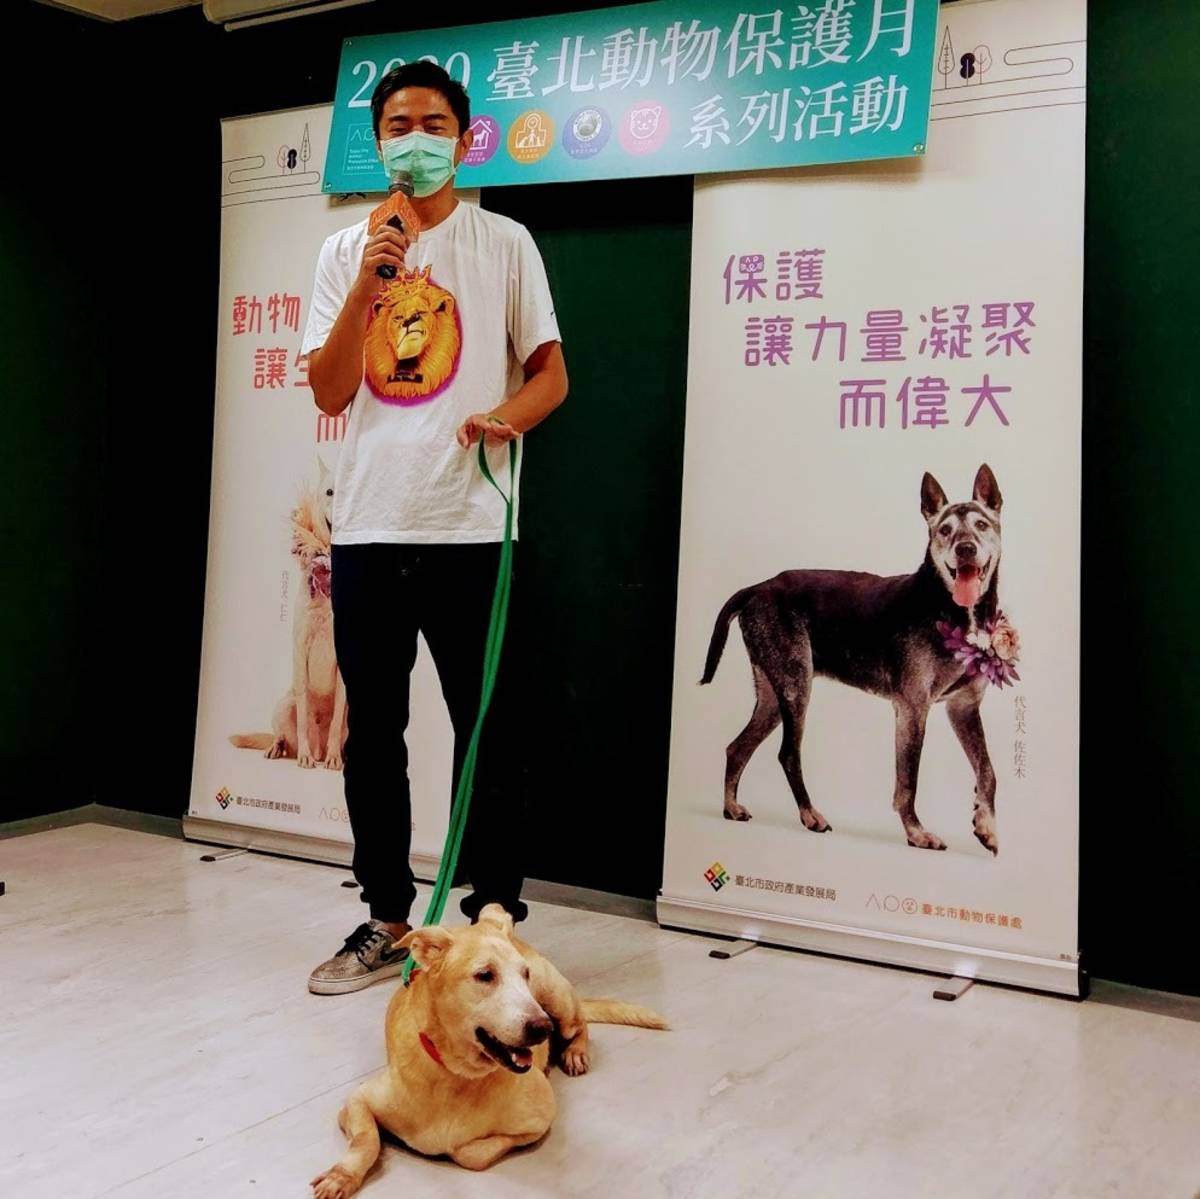 犬類行為專家熊爸王昱智建議民眾認養米克斯成犬